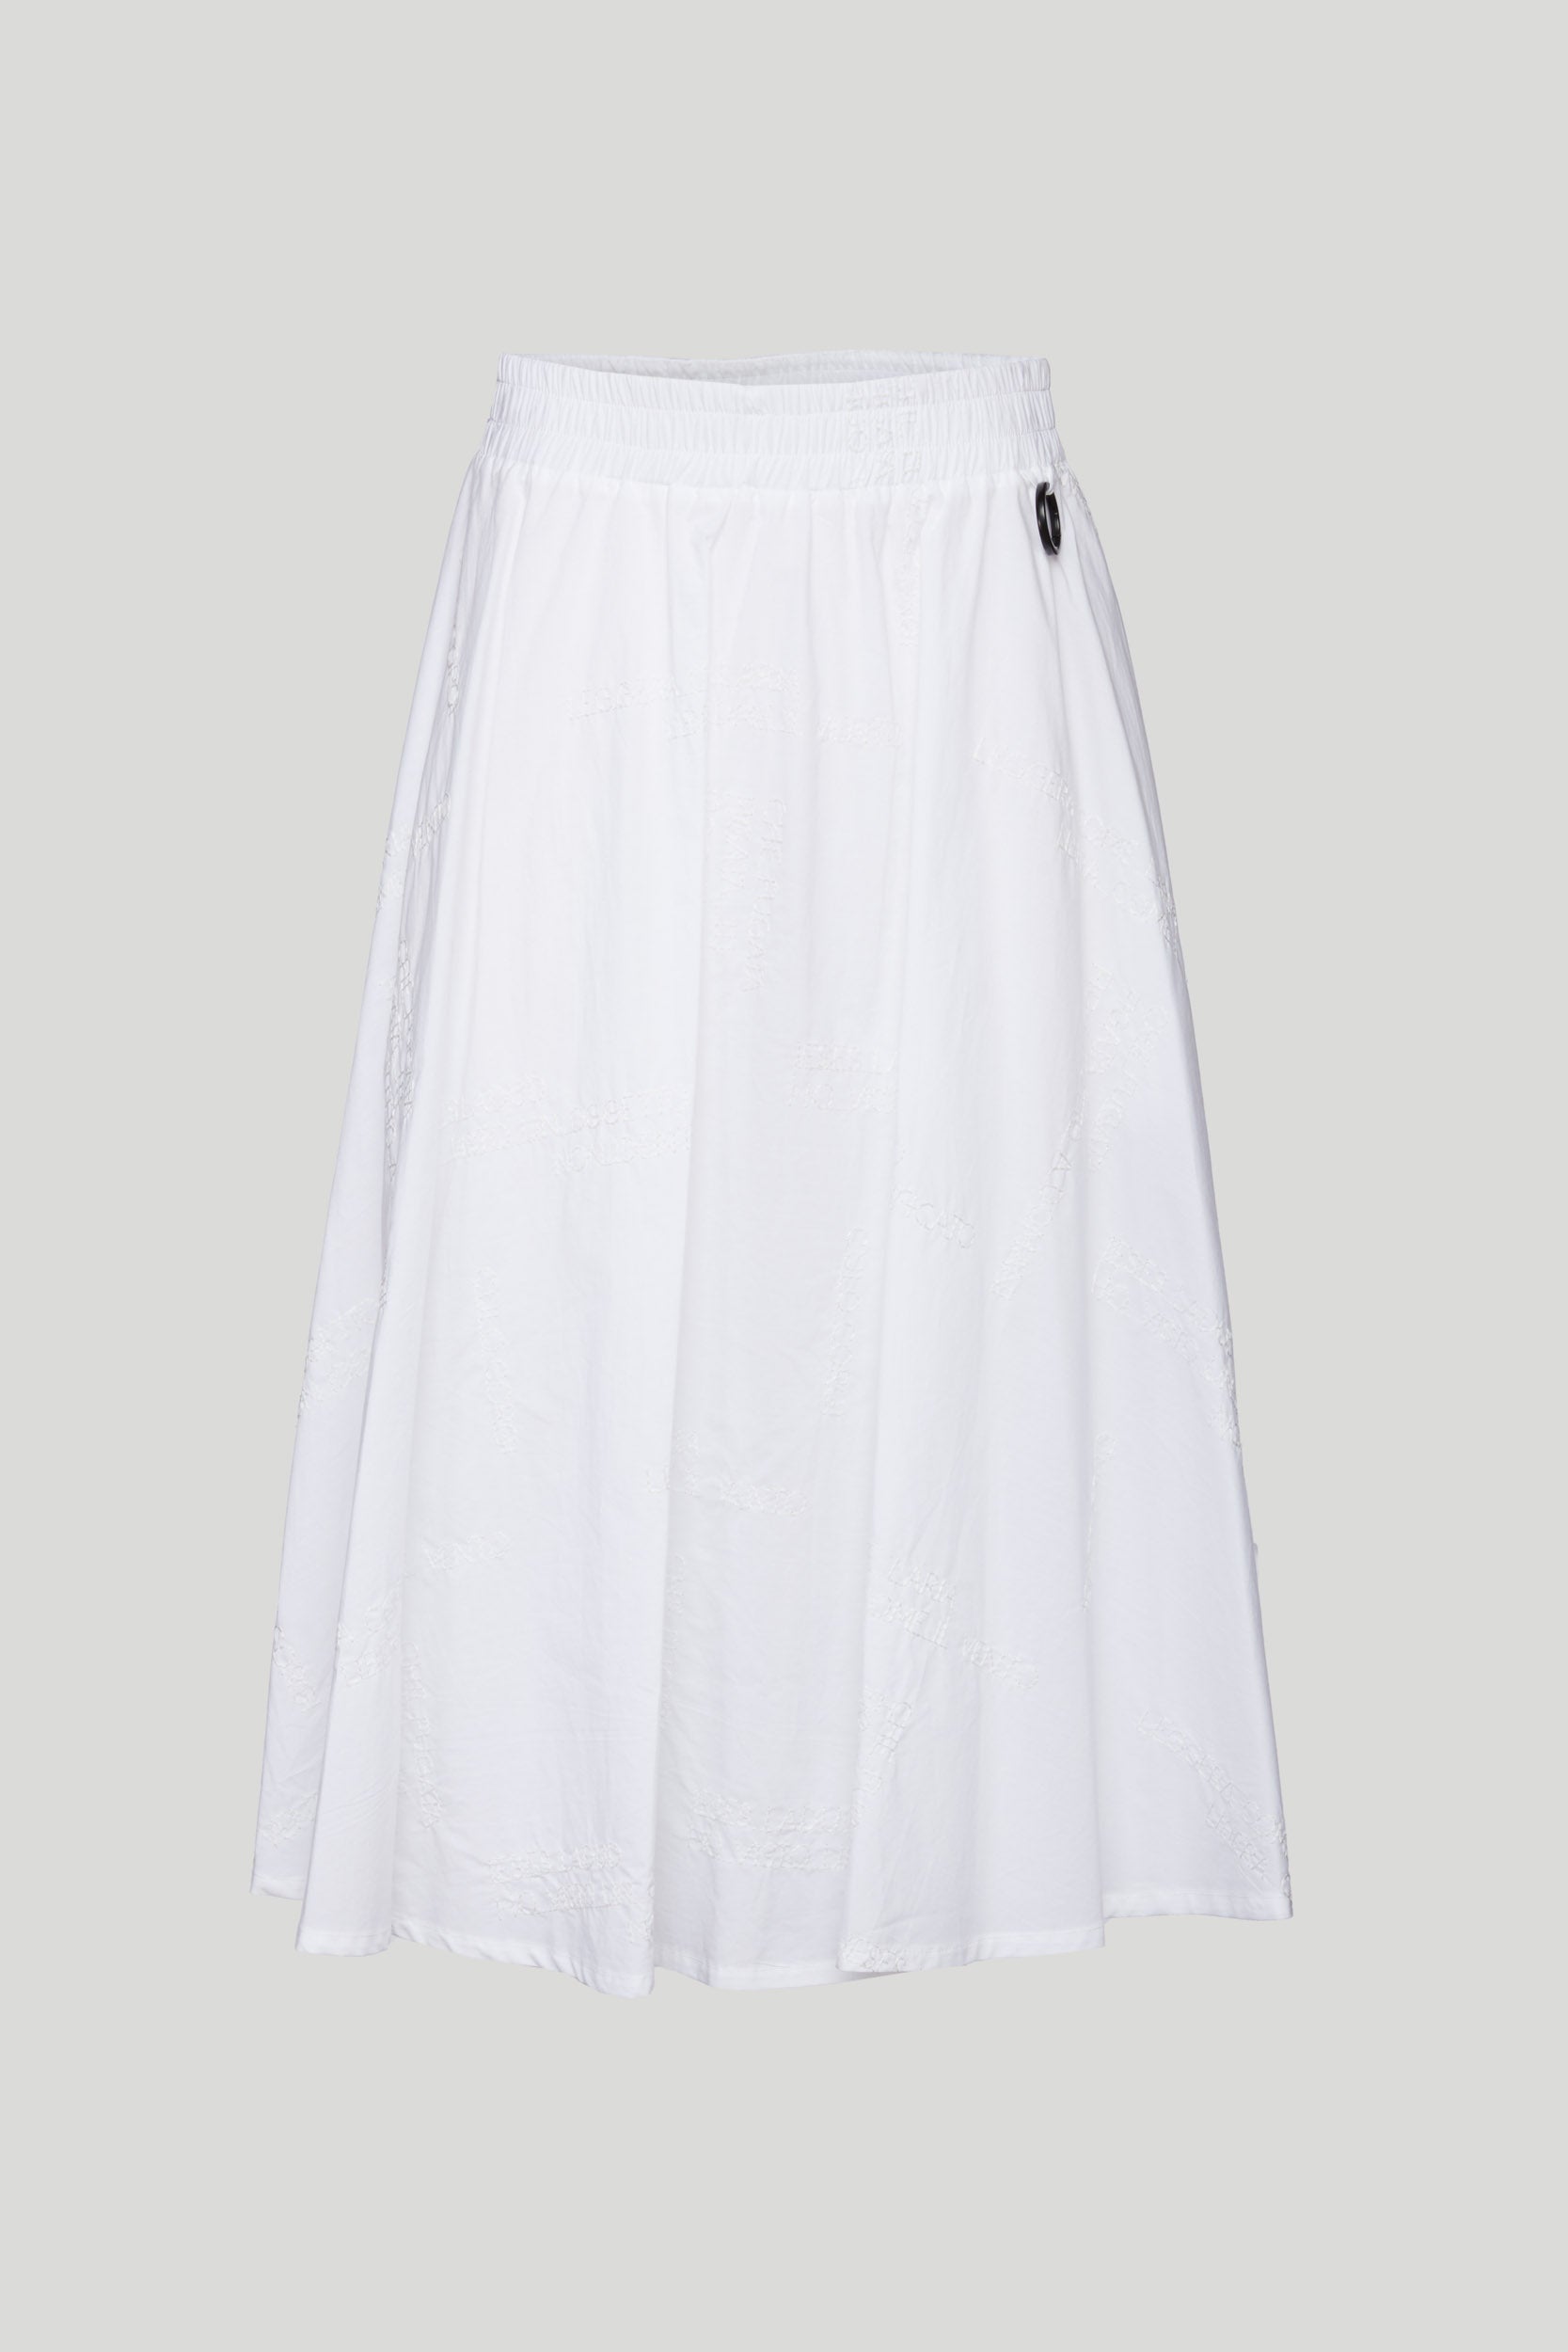 OTTOD'AME White Knee-length Skirt